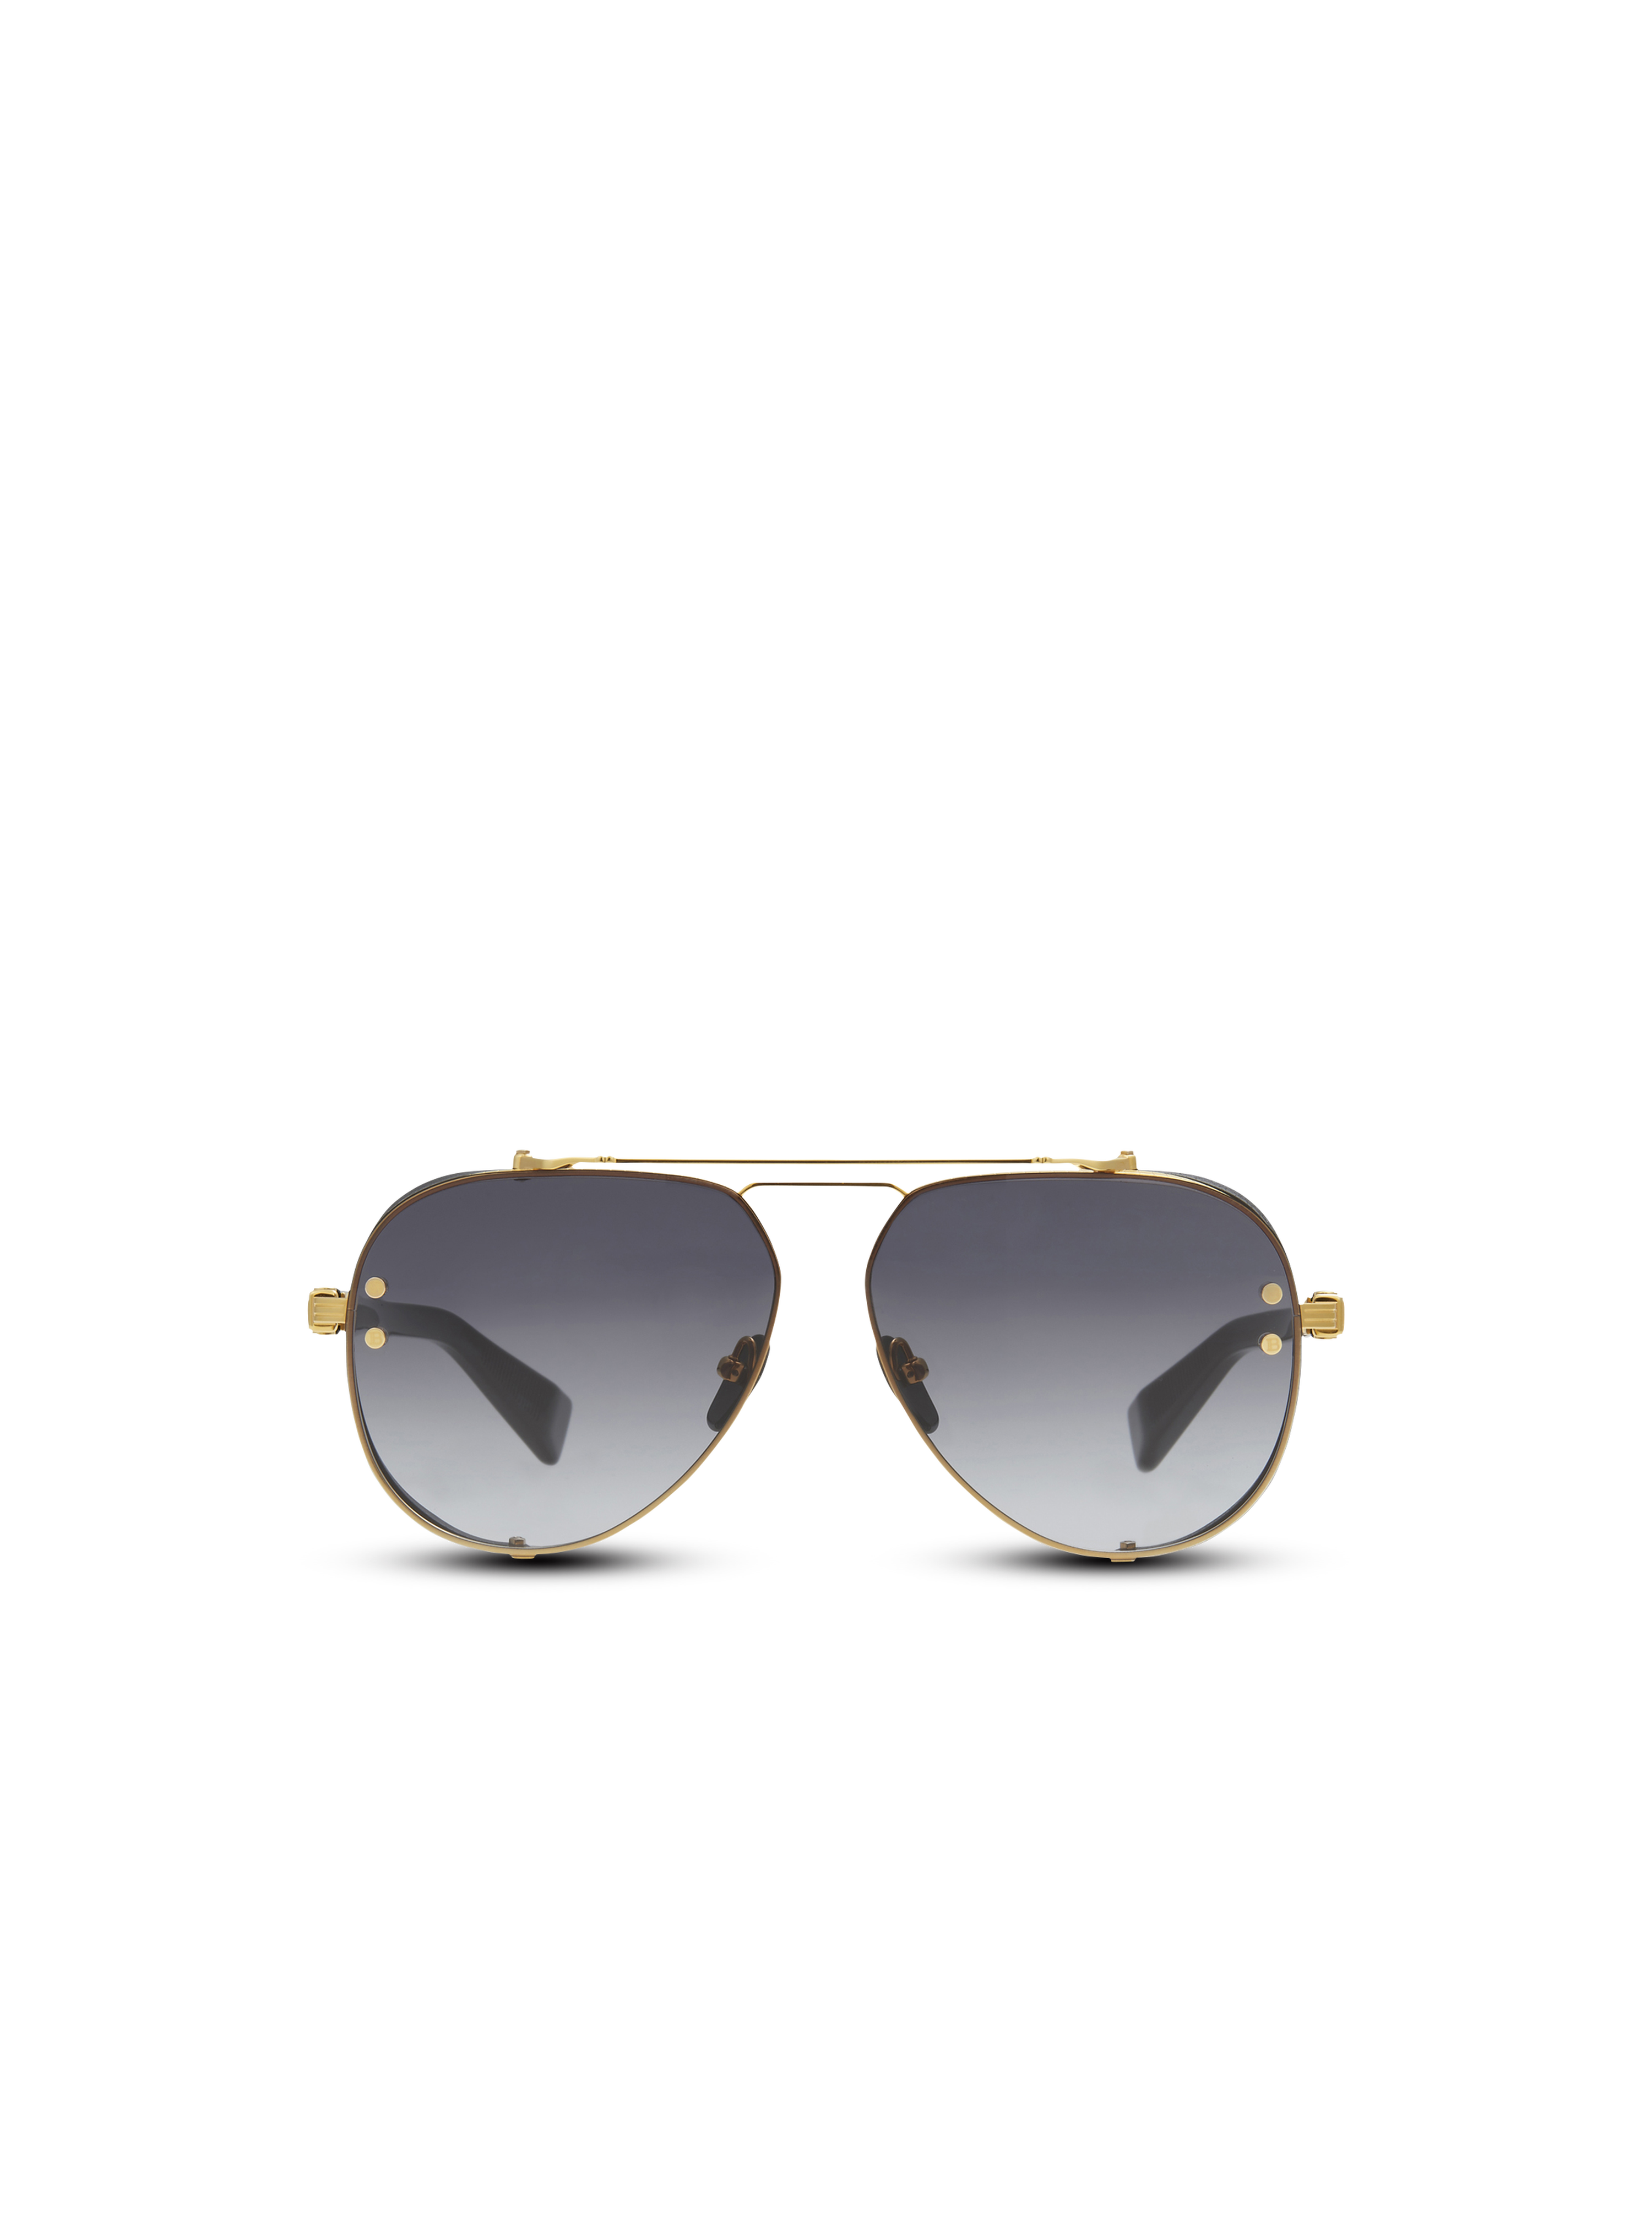 Captaine sunglasses, gold